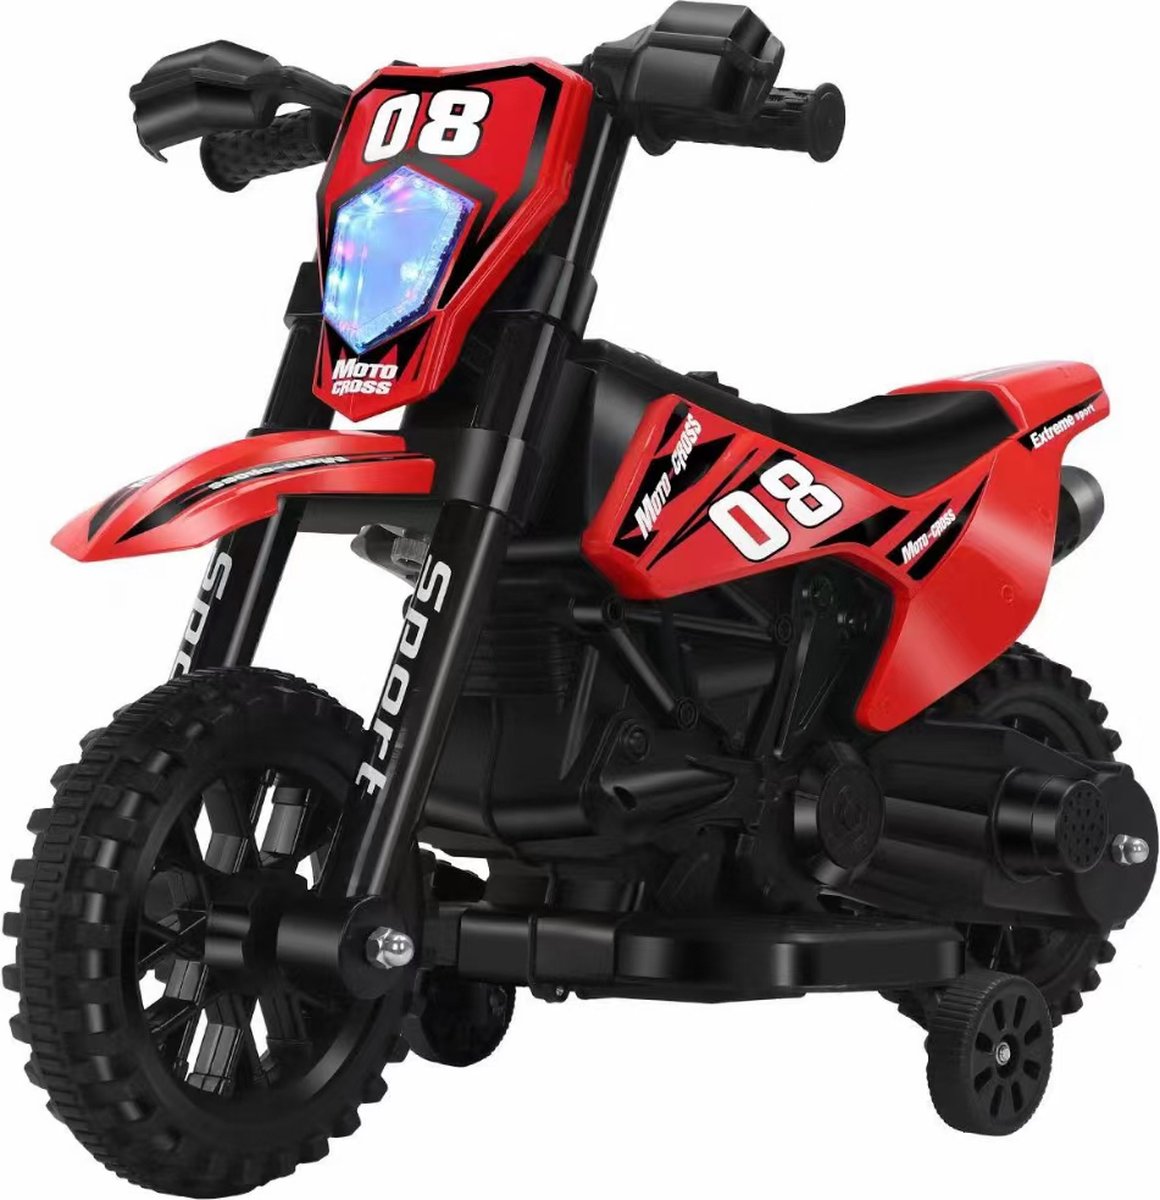 Beyo-living Elektrische kindermotor -Elektrische motor -Kindermotor elektrisch voertuig met 2 afneembare stabilisatoren- voor kinderen vanaf 2 jaar 6V 380 Moter -6 V 4500Mah- 86 x 40 x 56 cm- rood